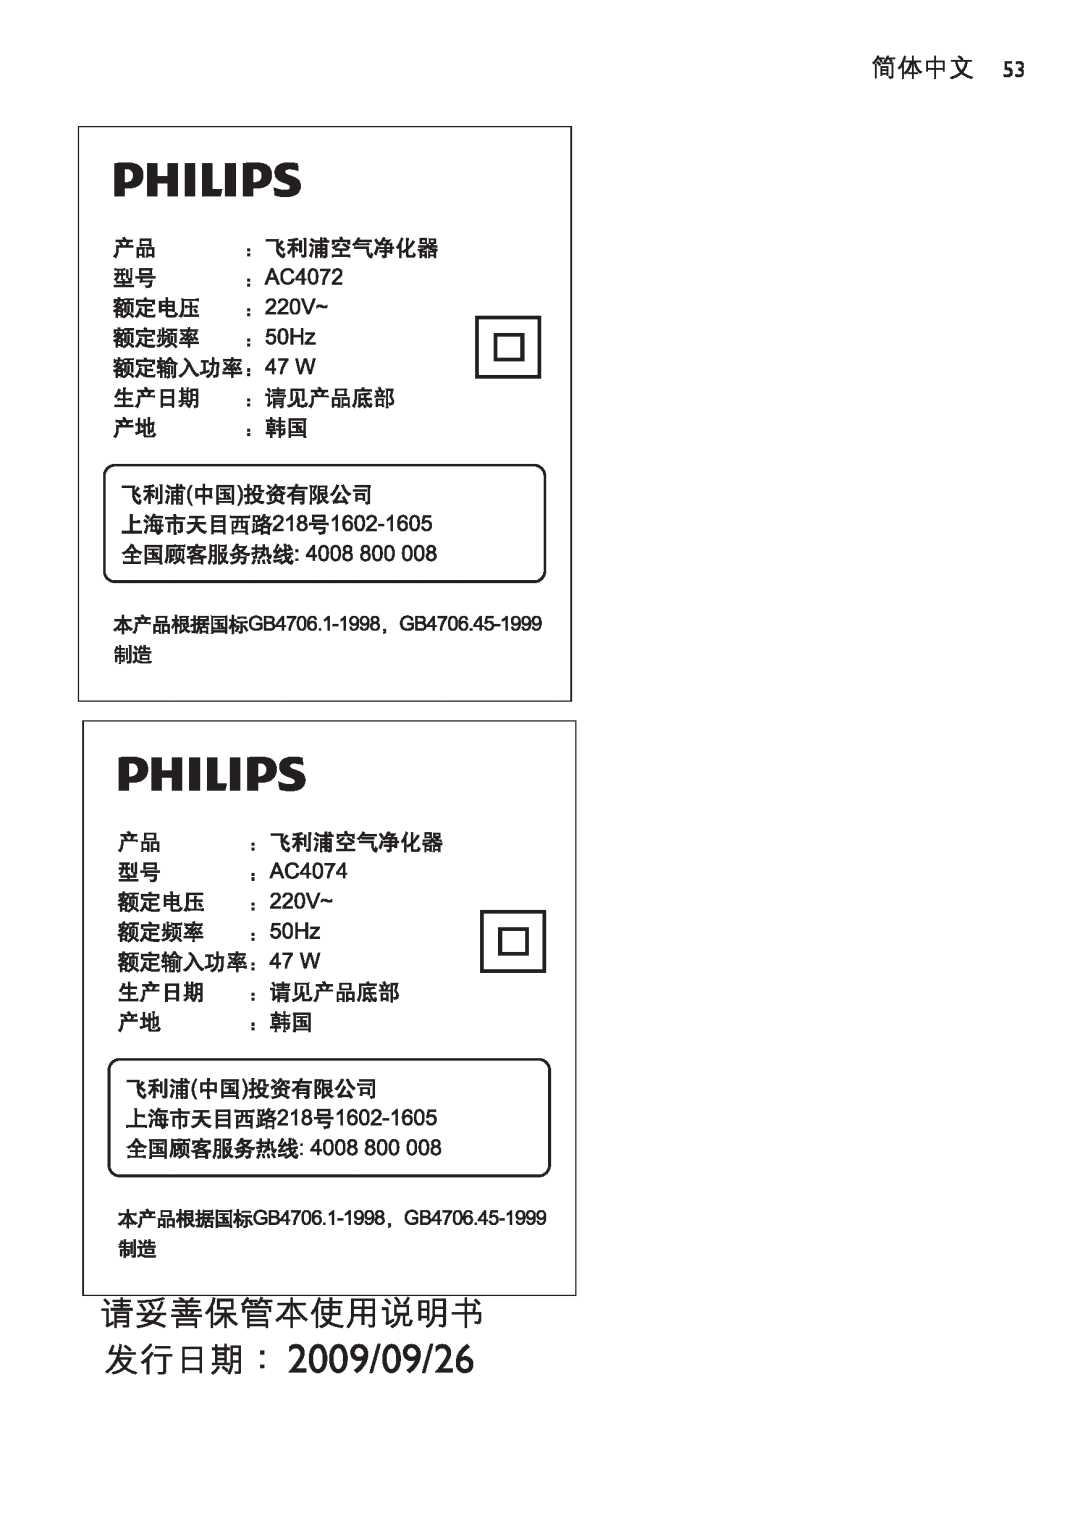 Philips AC4074 manual 2009/09/26, 简体中文 